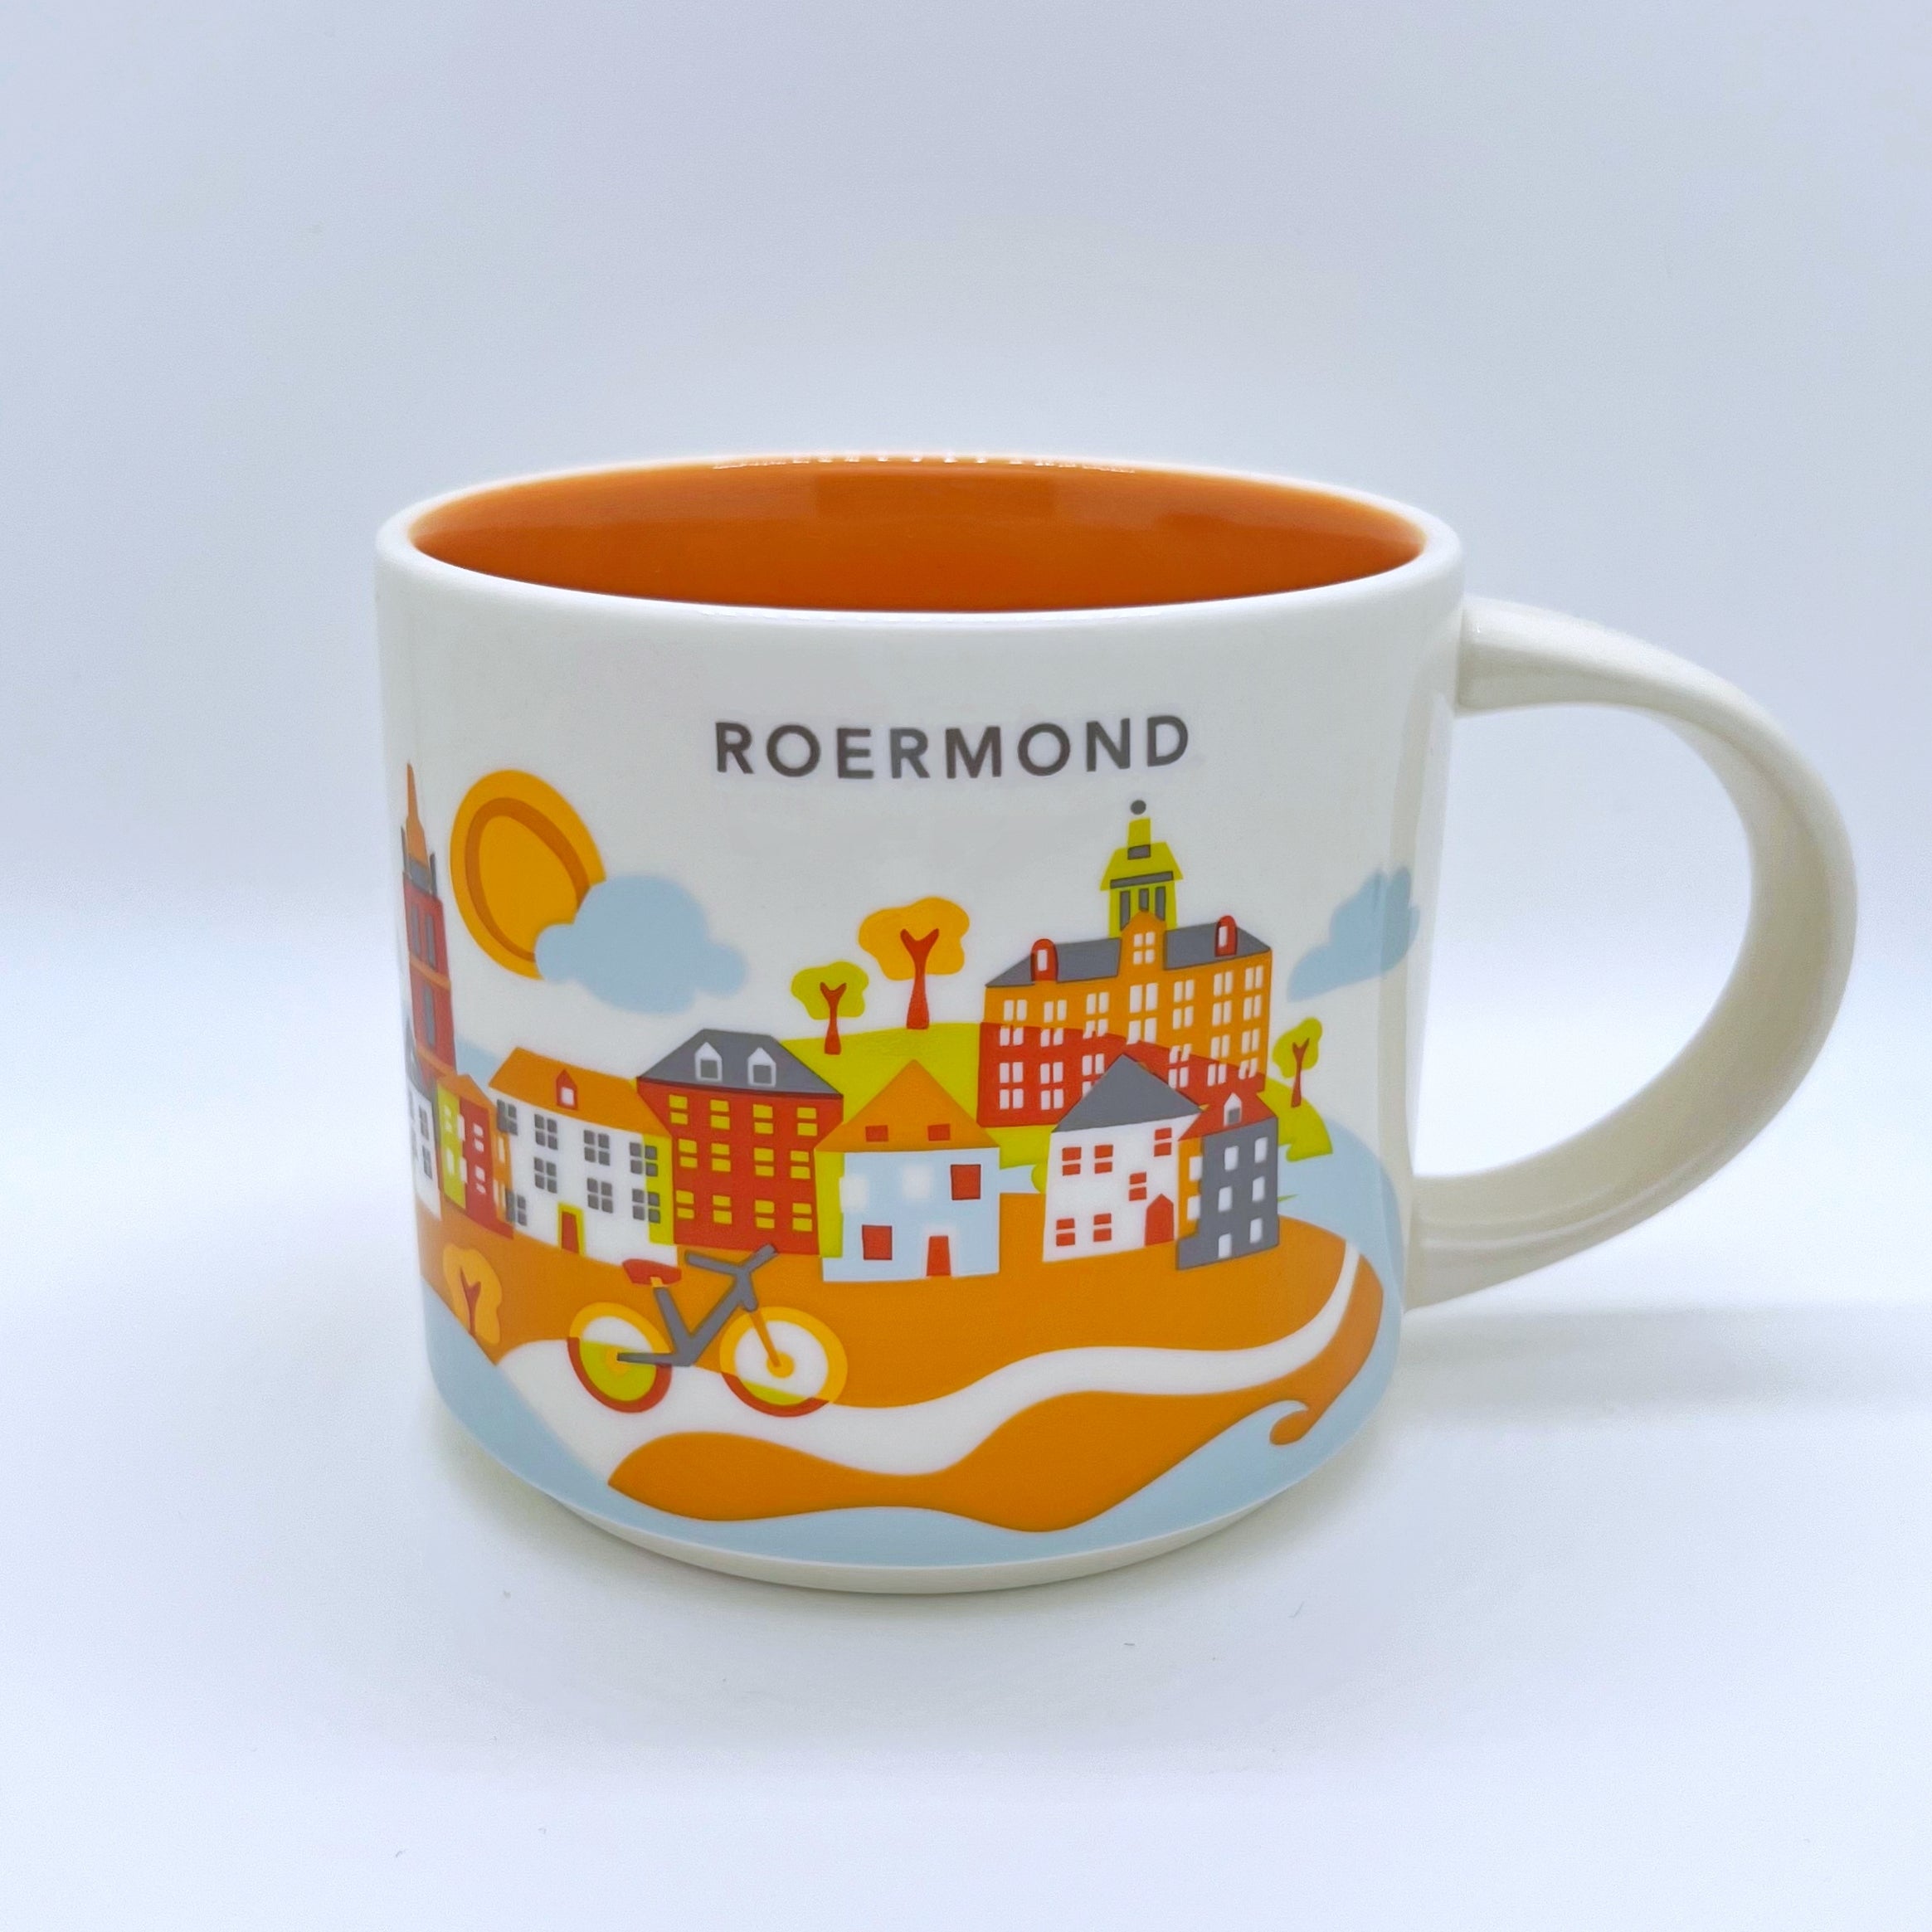 Kaffee Tee und Cappuccino Tasse von Starbucks mit gemalten Bildern aus der Stadt Roermond